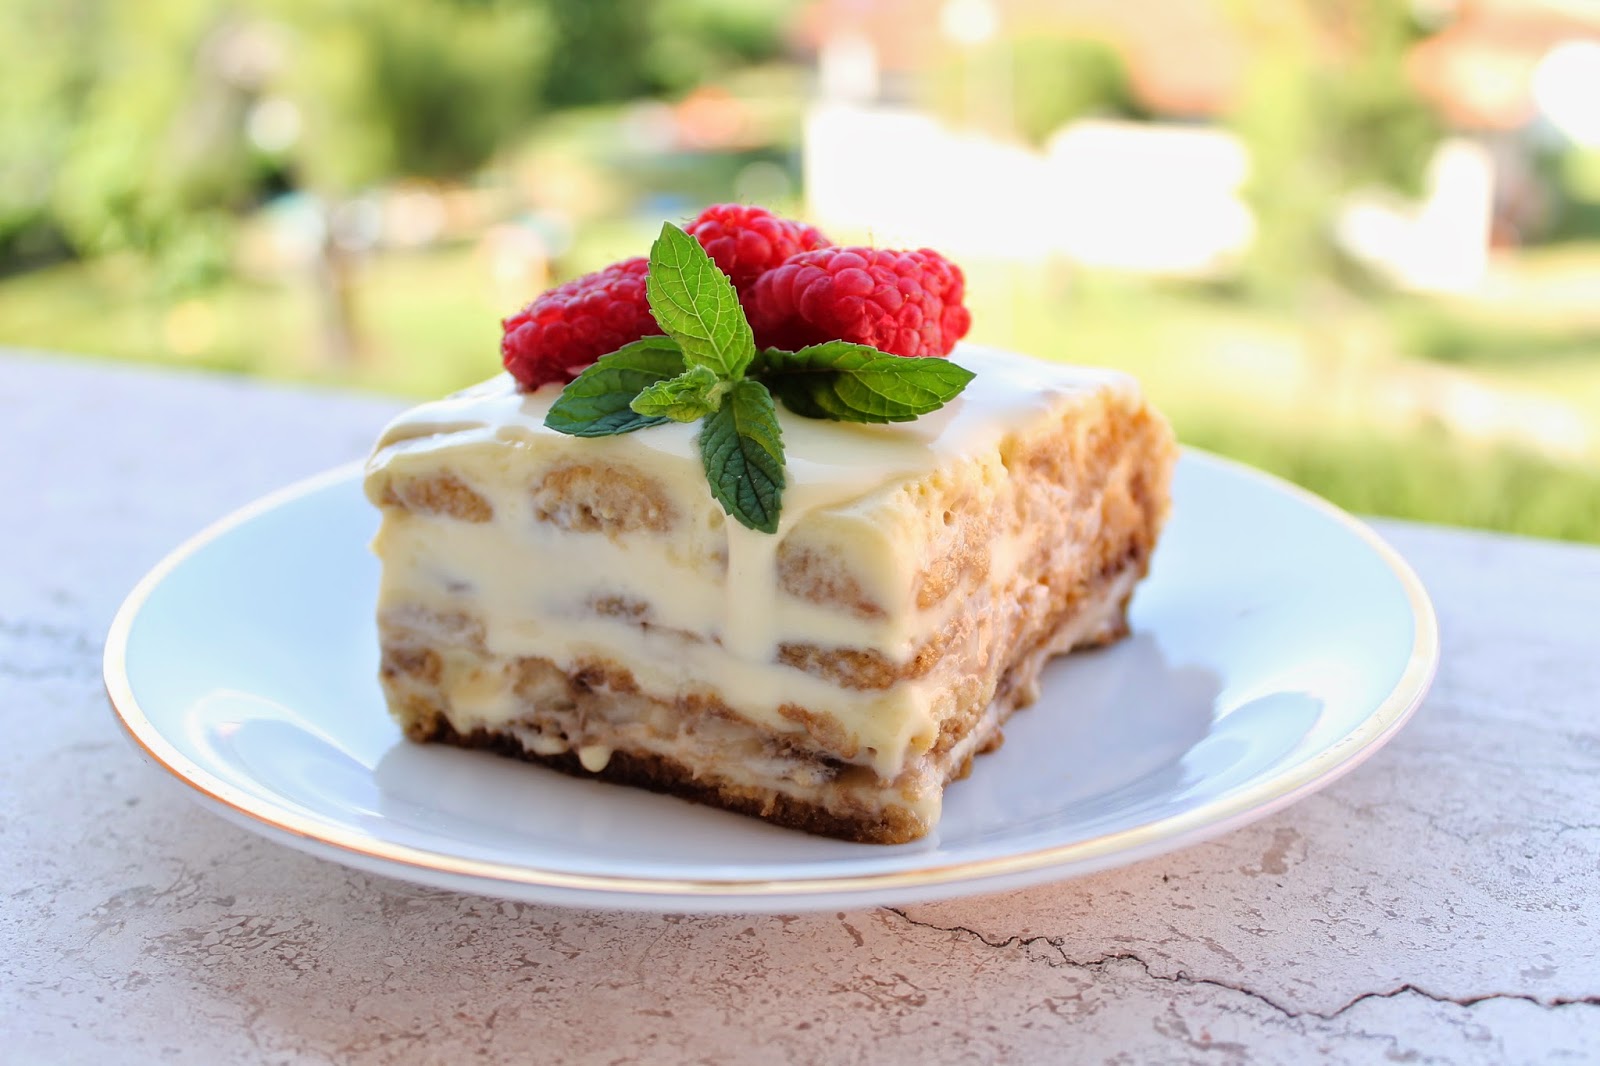 Творожный торт отзывы. Пирожное тирамису маскарпоне. Торт творожный тирамису. Тирамису со сливками и маскарпоне. Тирамису десерт сливочный.